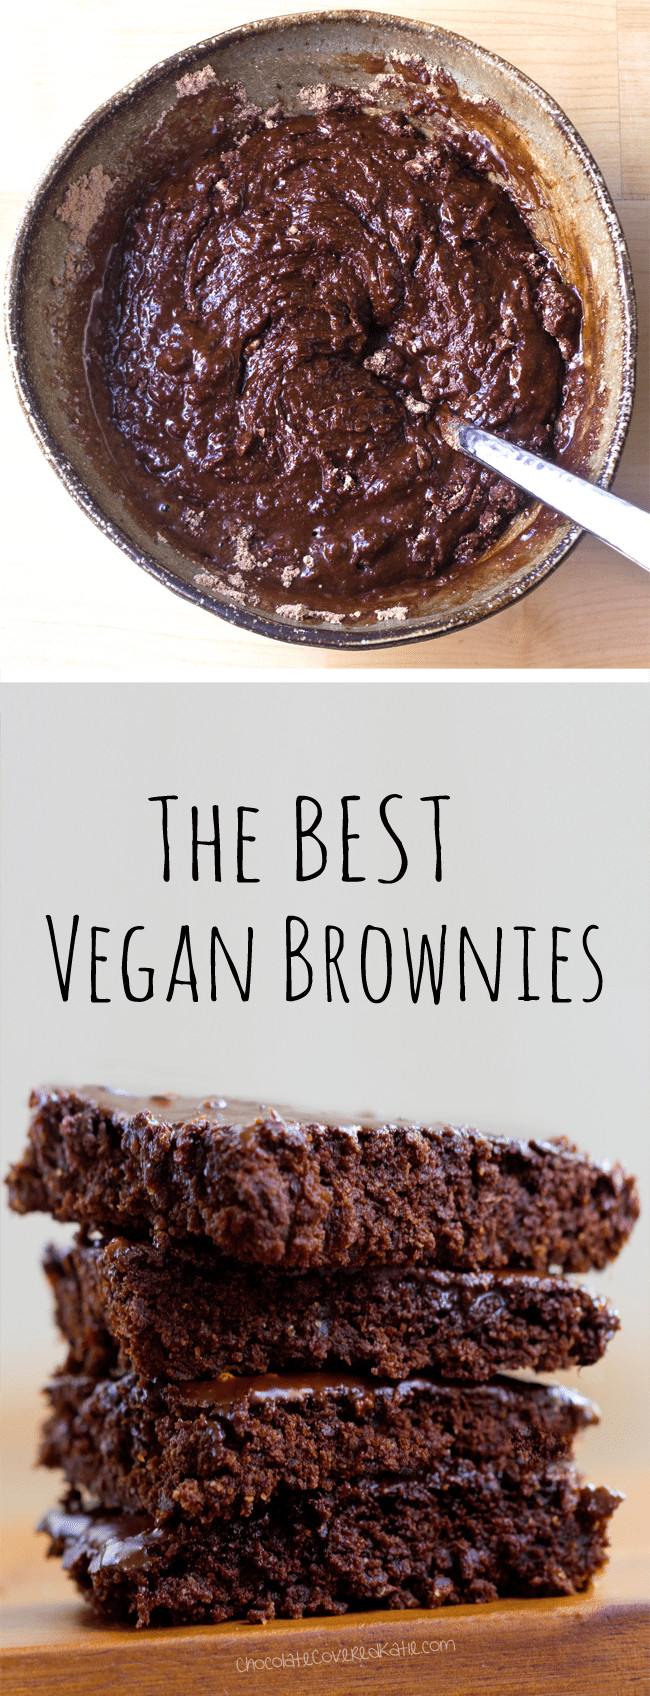 Vegan Brownie Recipes
 Vegan Brownies The BEST Recipe